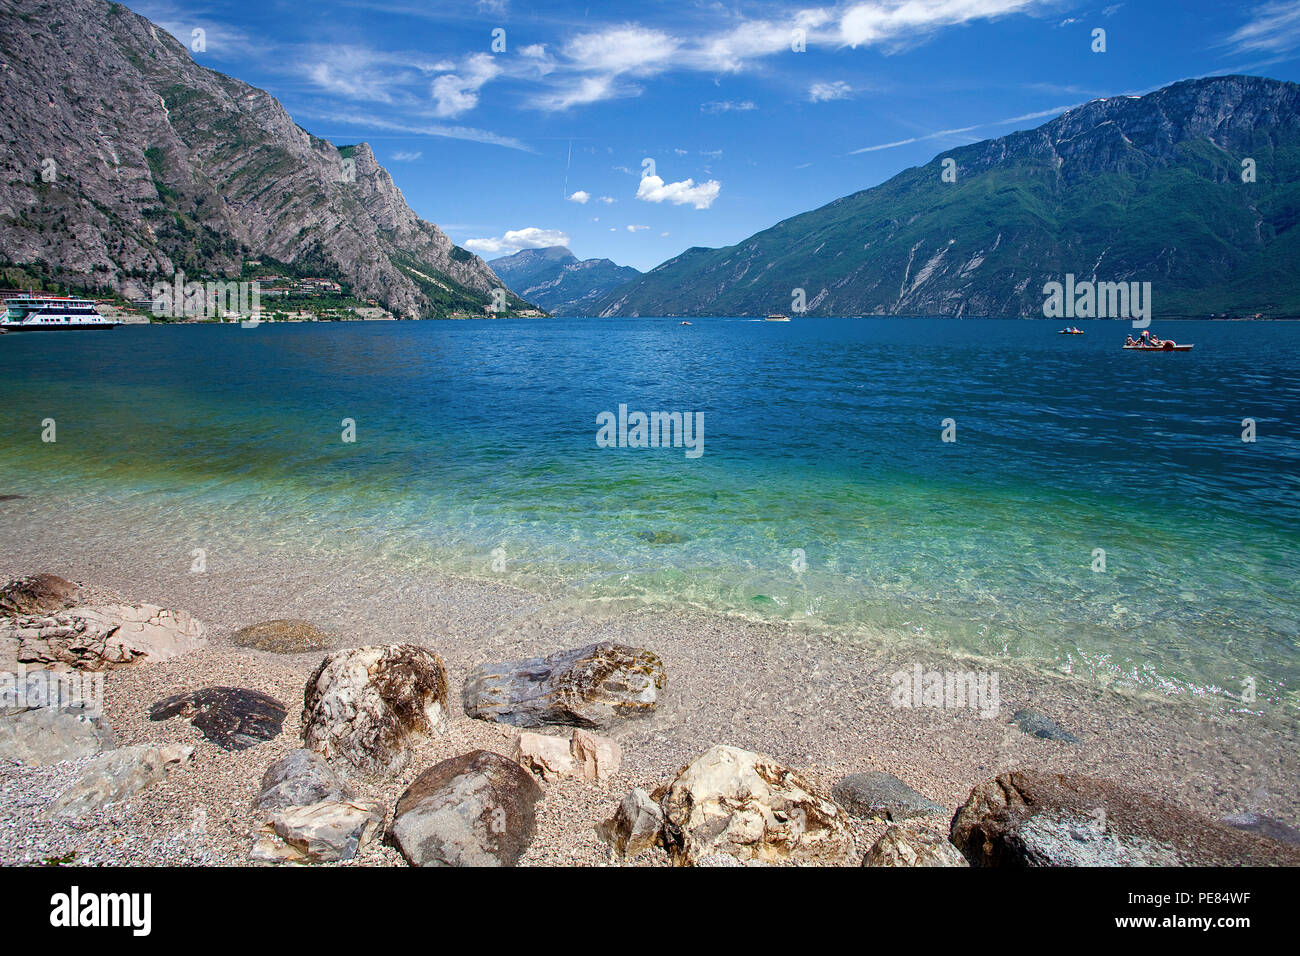 Strand von Limone, Limone sul Garda, Gardasee, Lombardei, Italien | Strand von Limone, Limone sul Garda, Gardasee, Lombardei, Italien Stockfoto